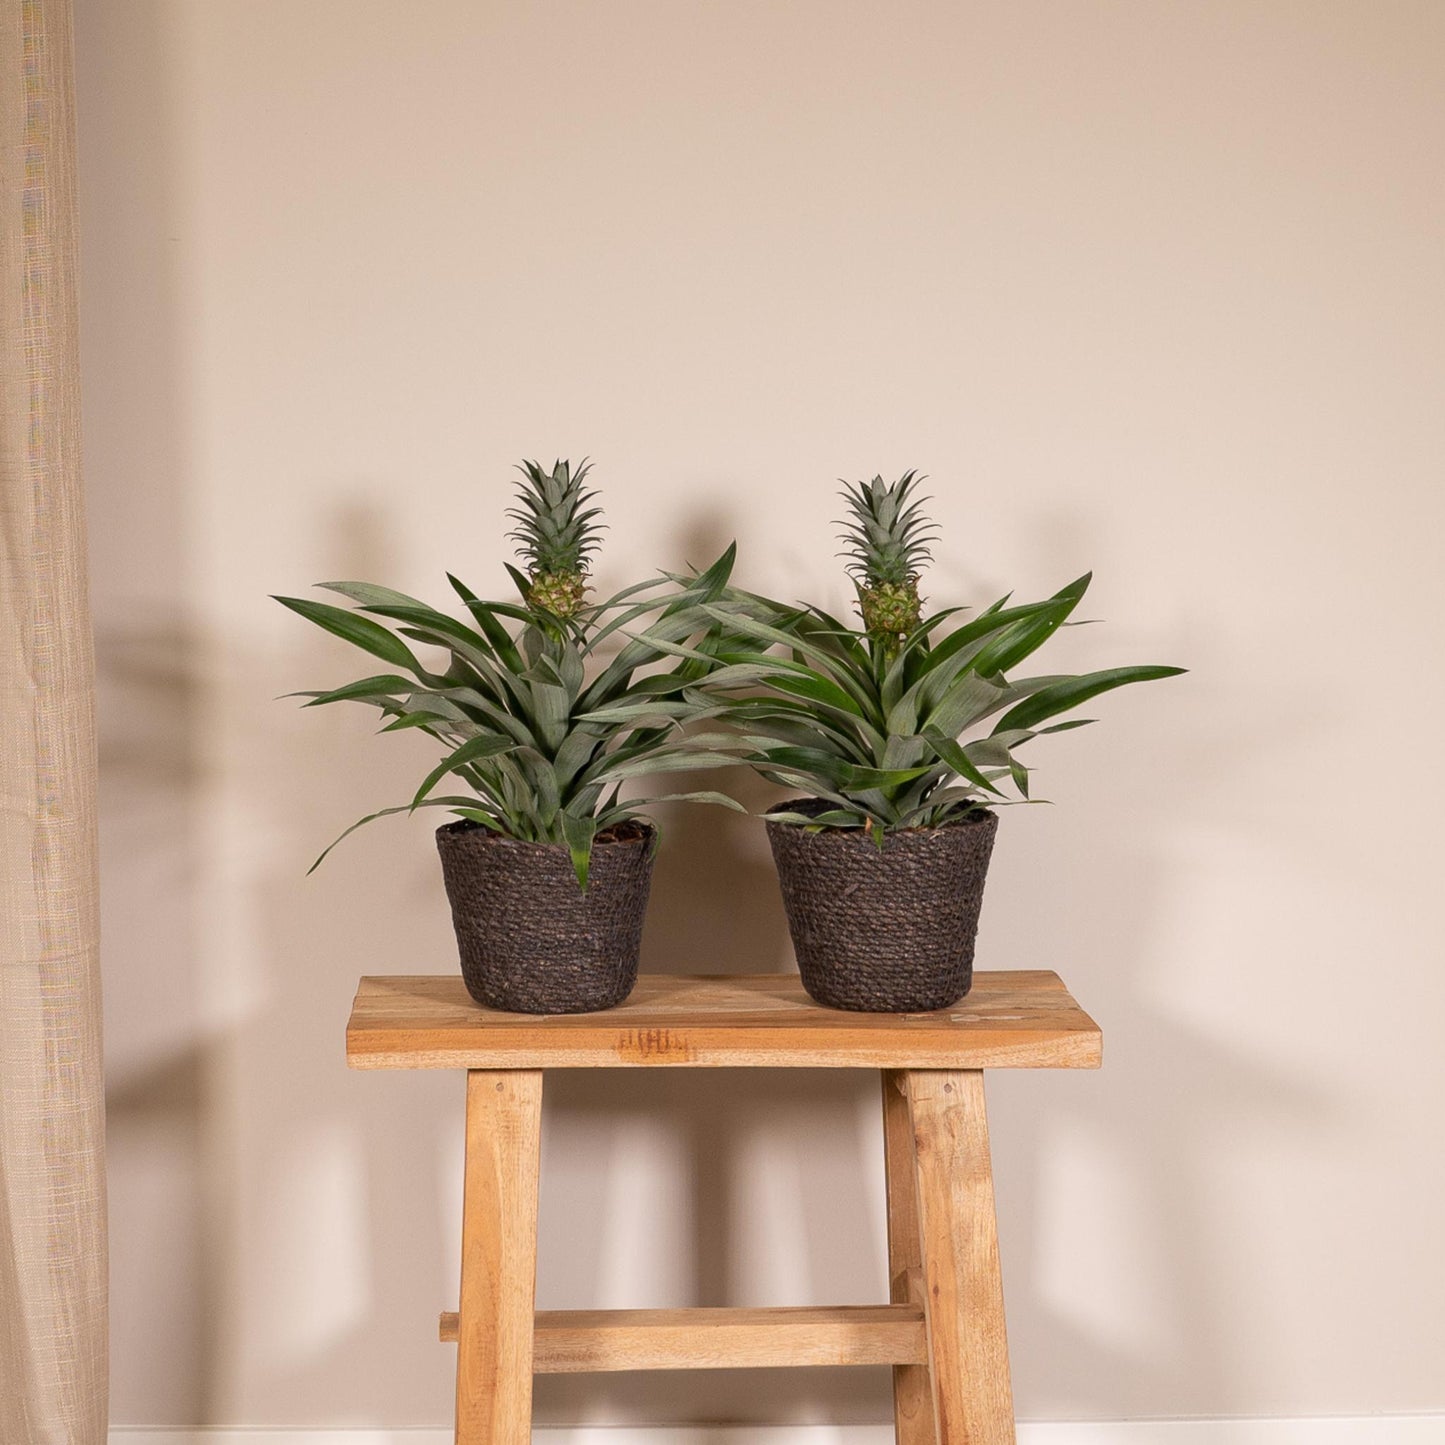 2 stuks Bromelia - Ananasplant - 30cm - ø12